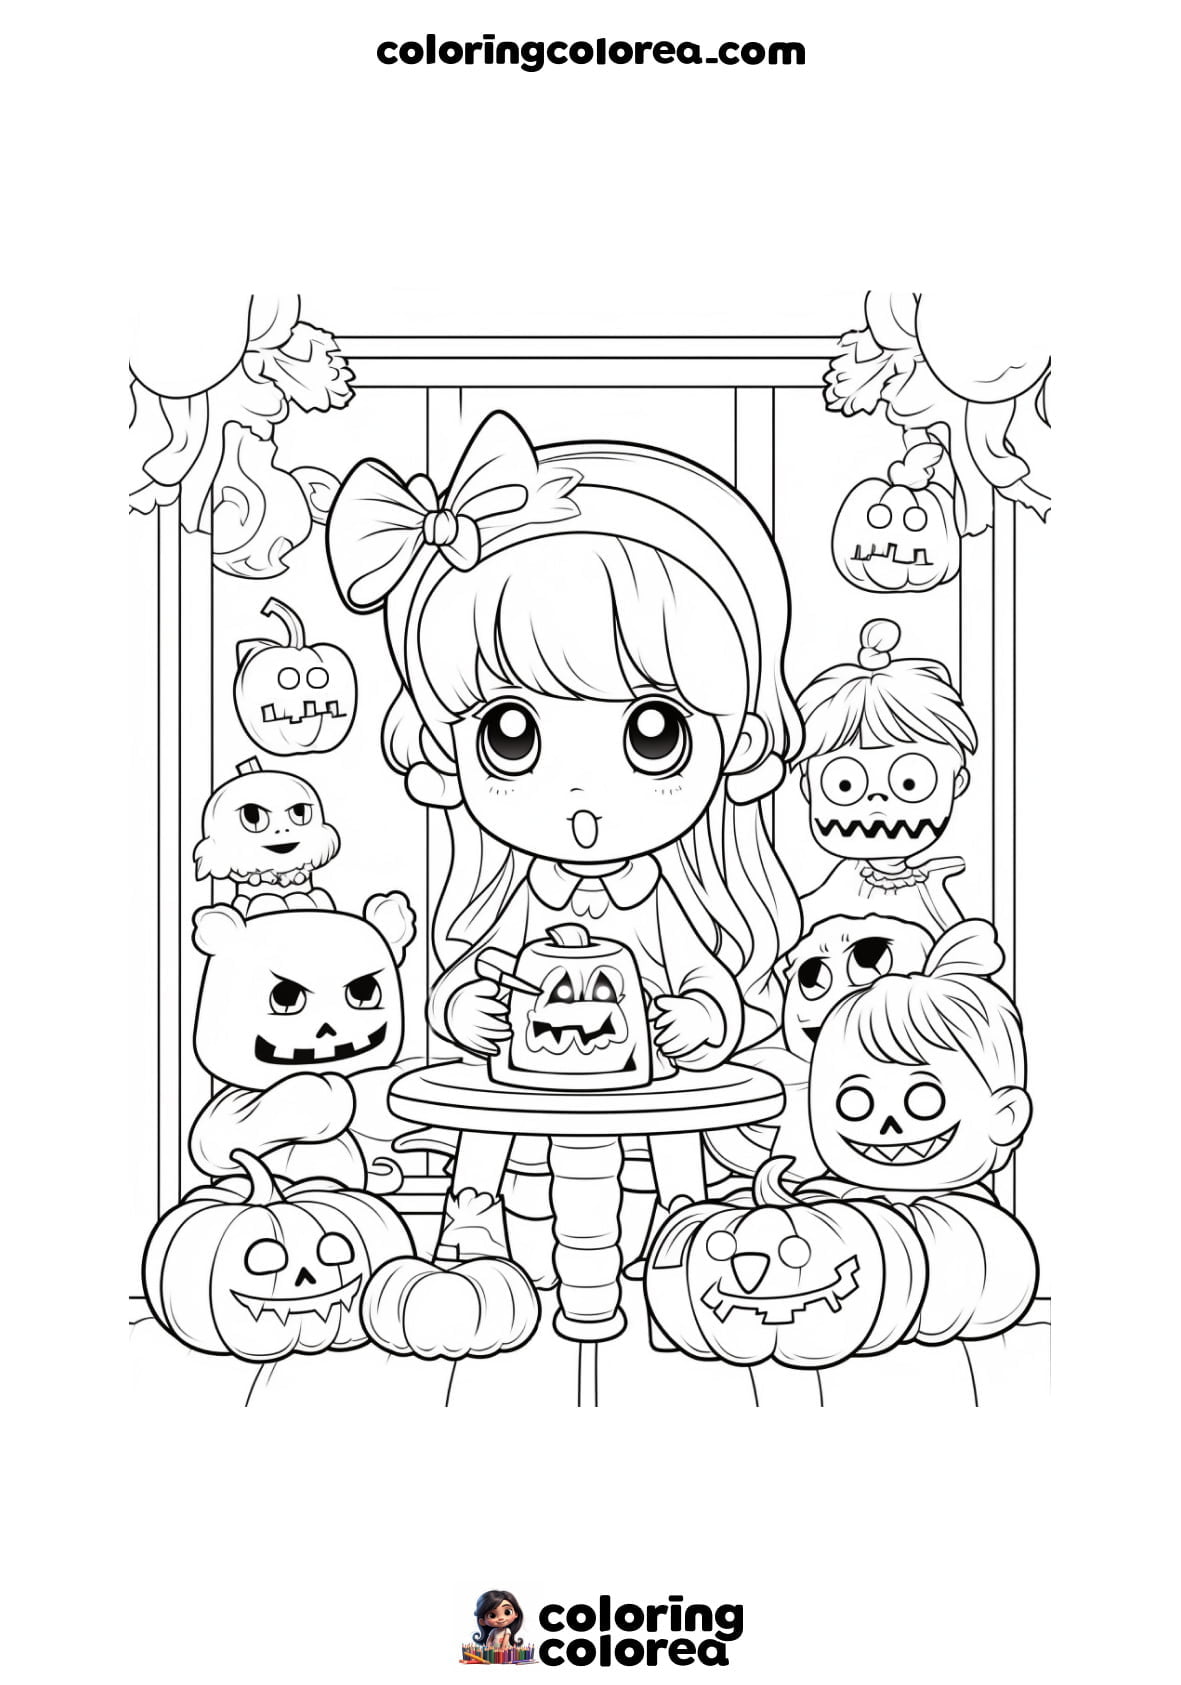 Dibujo para colorear de una niña con varios adornos de halloween